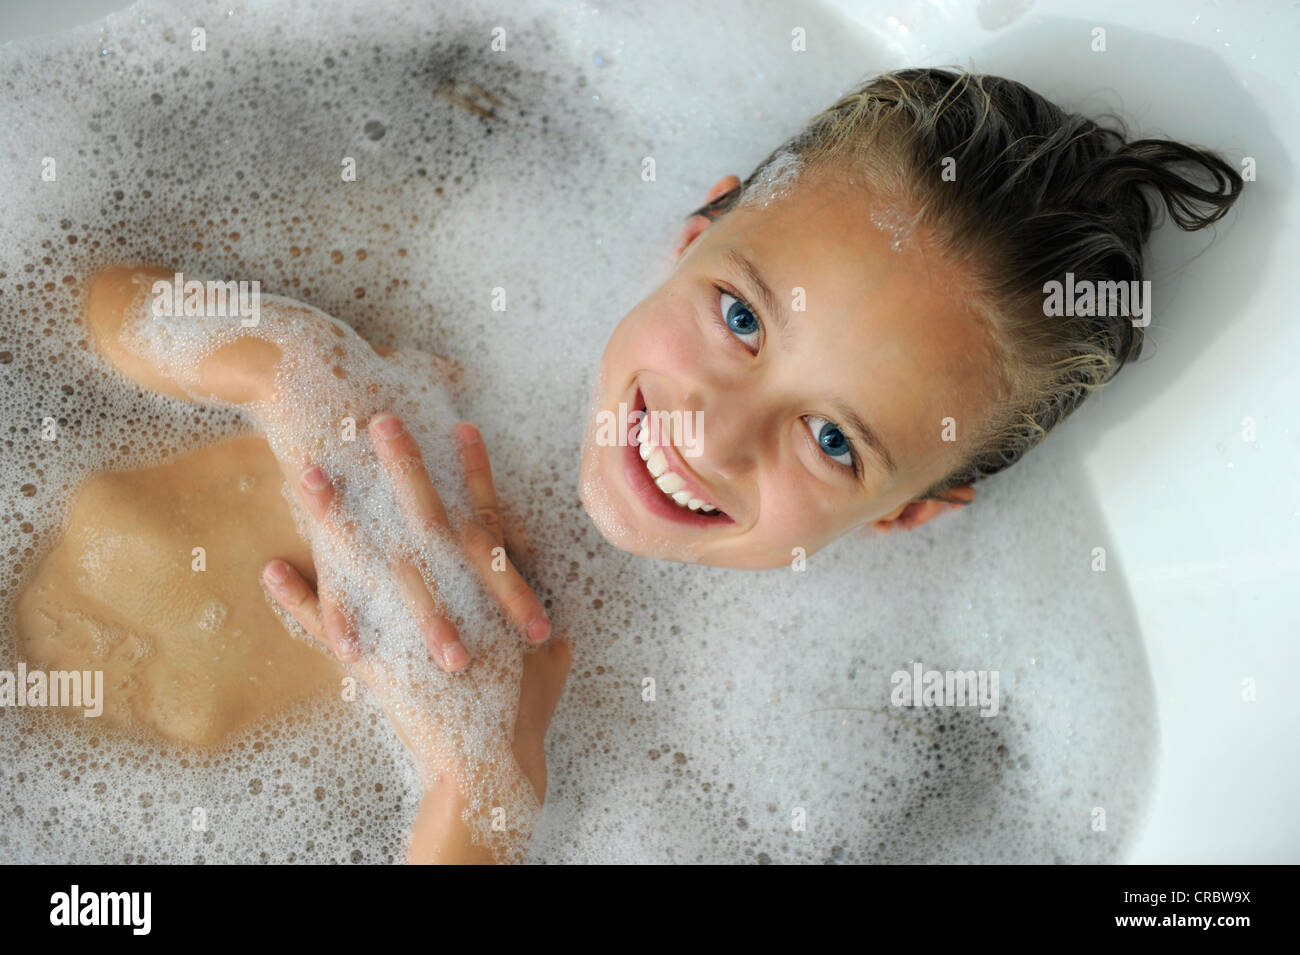 Jeune Fille Dans Une Baignoire Photo Stock Alamy